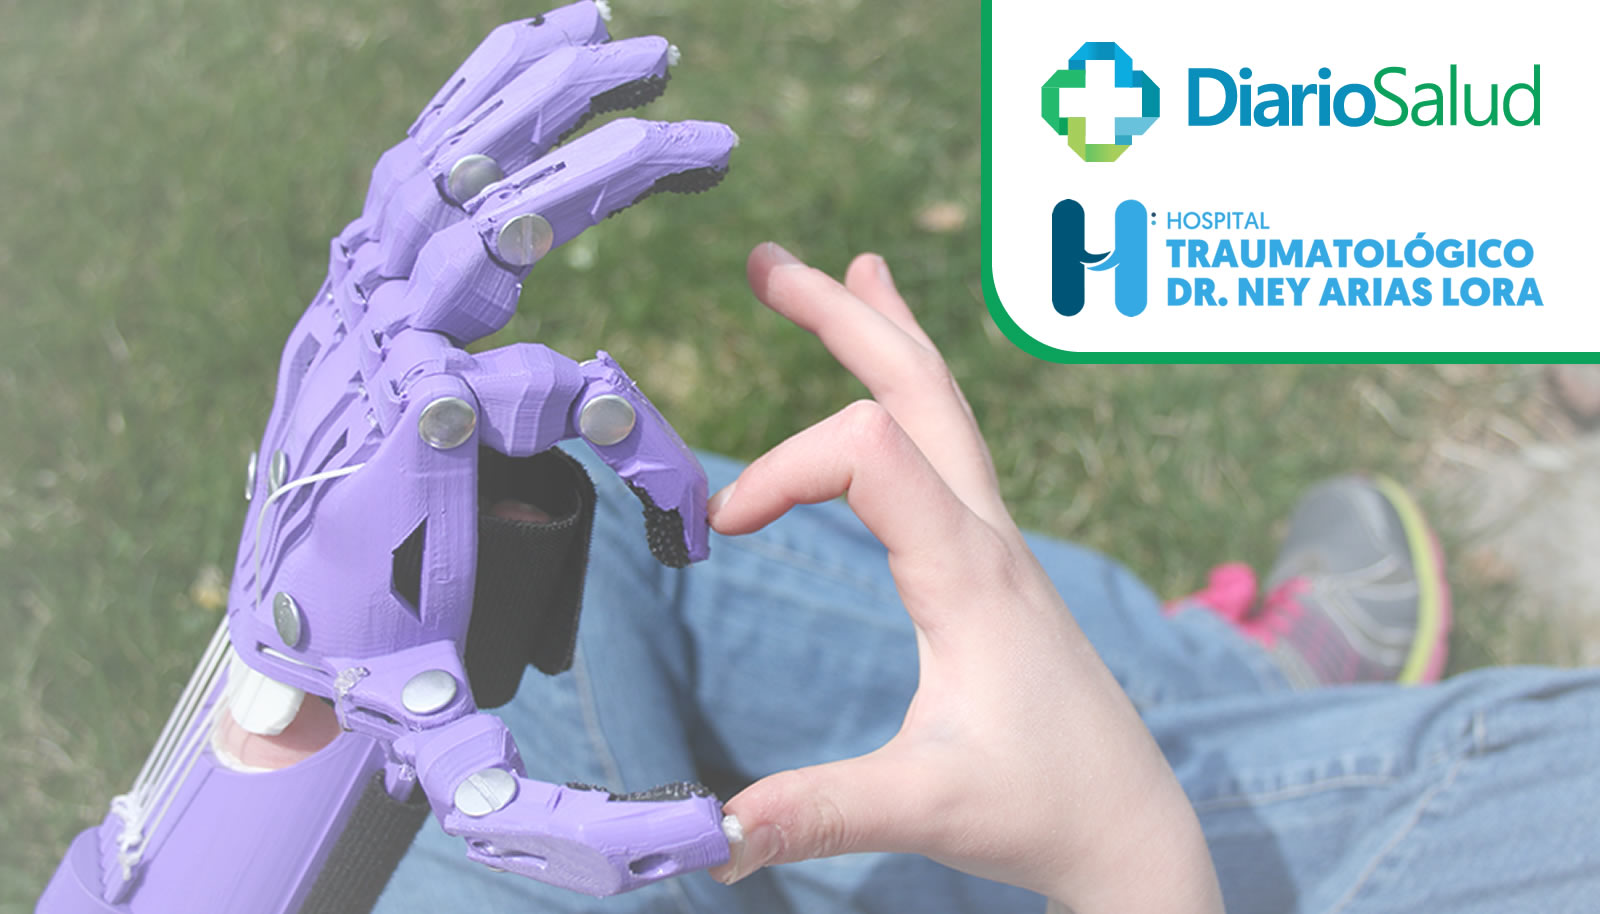 Estamos en busca de pacientes para donaciones de prótesis de mano…¡Ayúdanos a ayudar! 